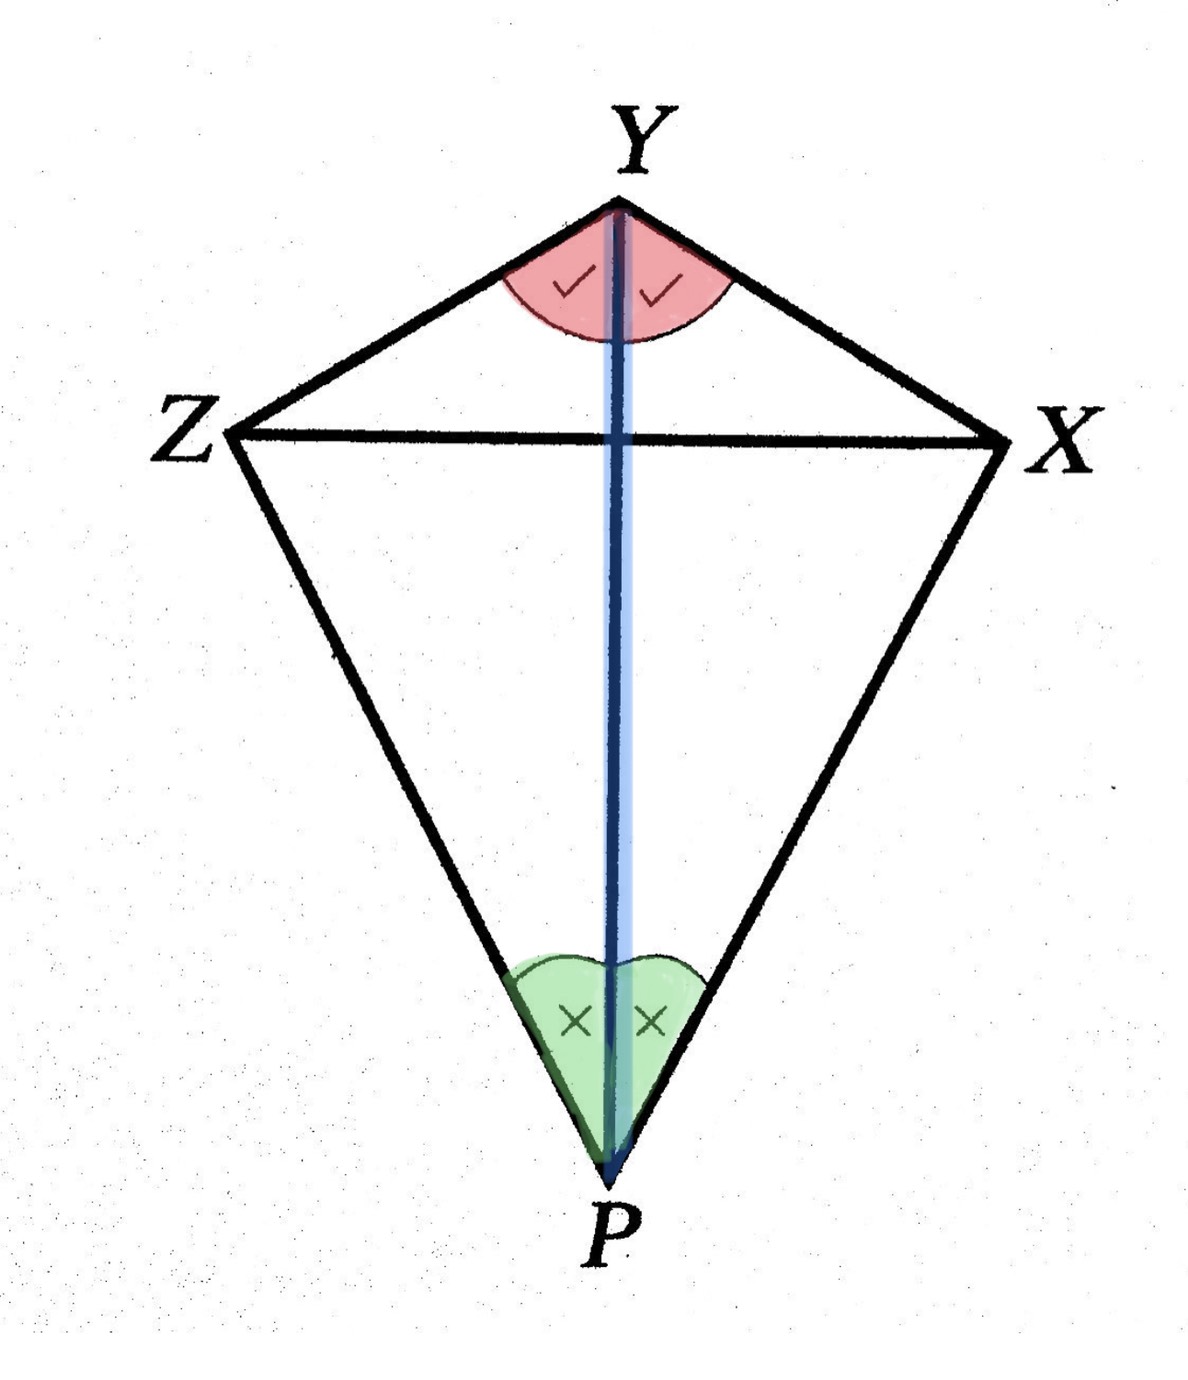 สามเหลี่ยมที่เท่ากันทุกประการแบบ มุม-ด้าน-มุม - Nockacademy